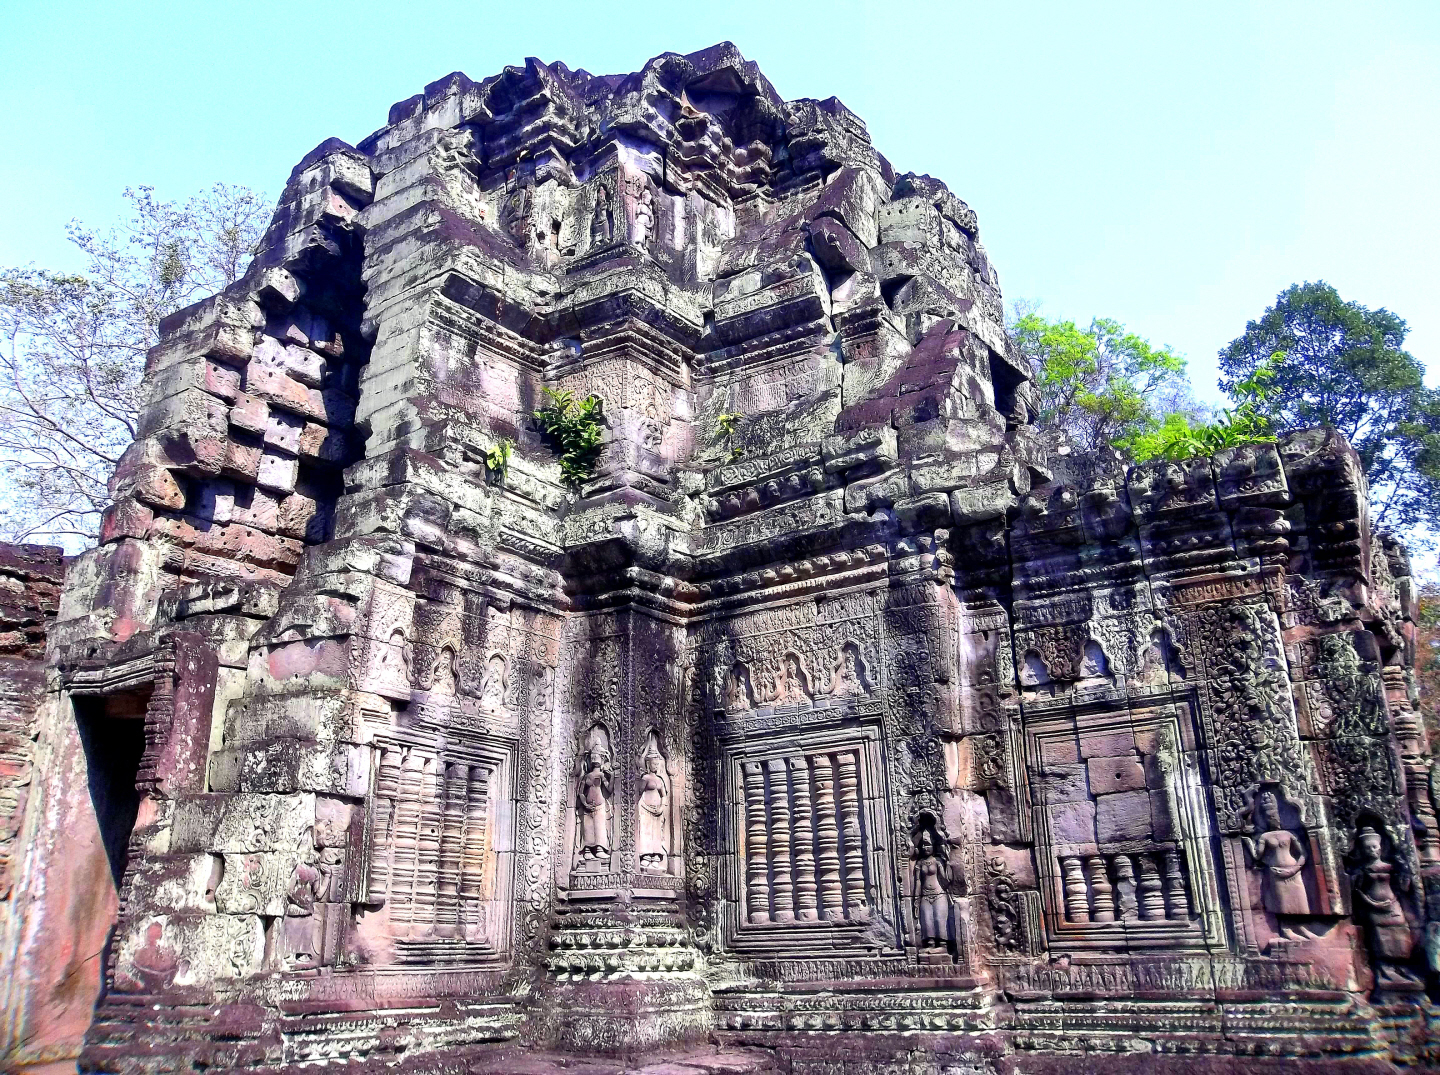 Preah Khan Temple Complex, Angkor Wat - Cambodia